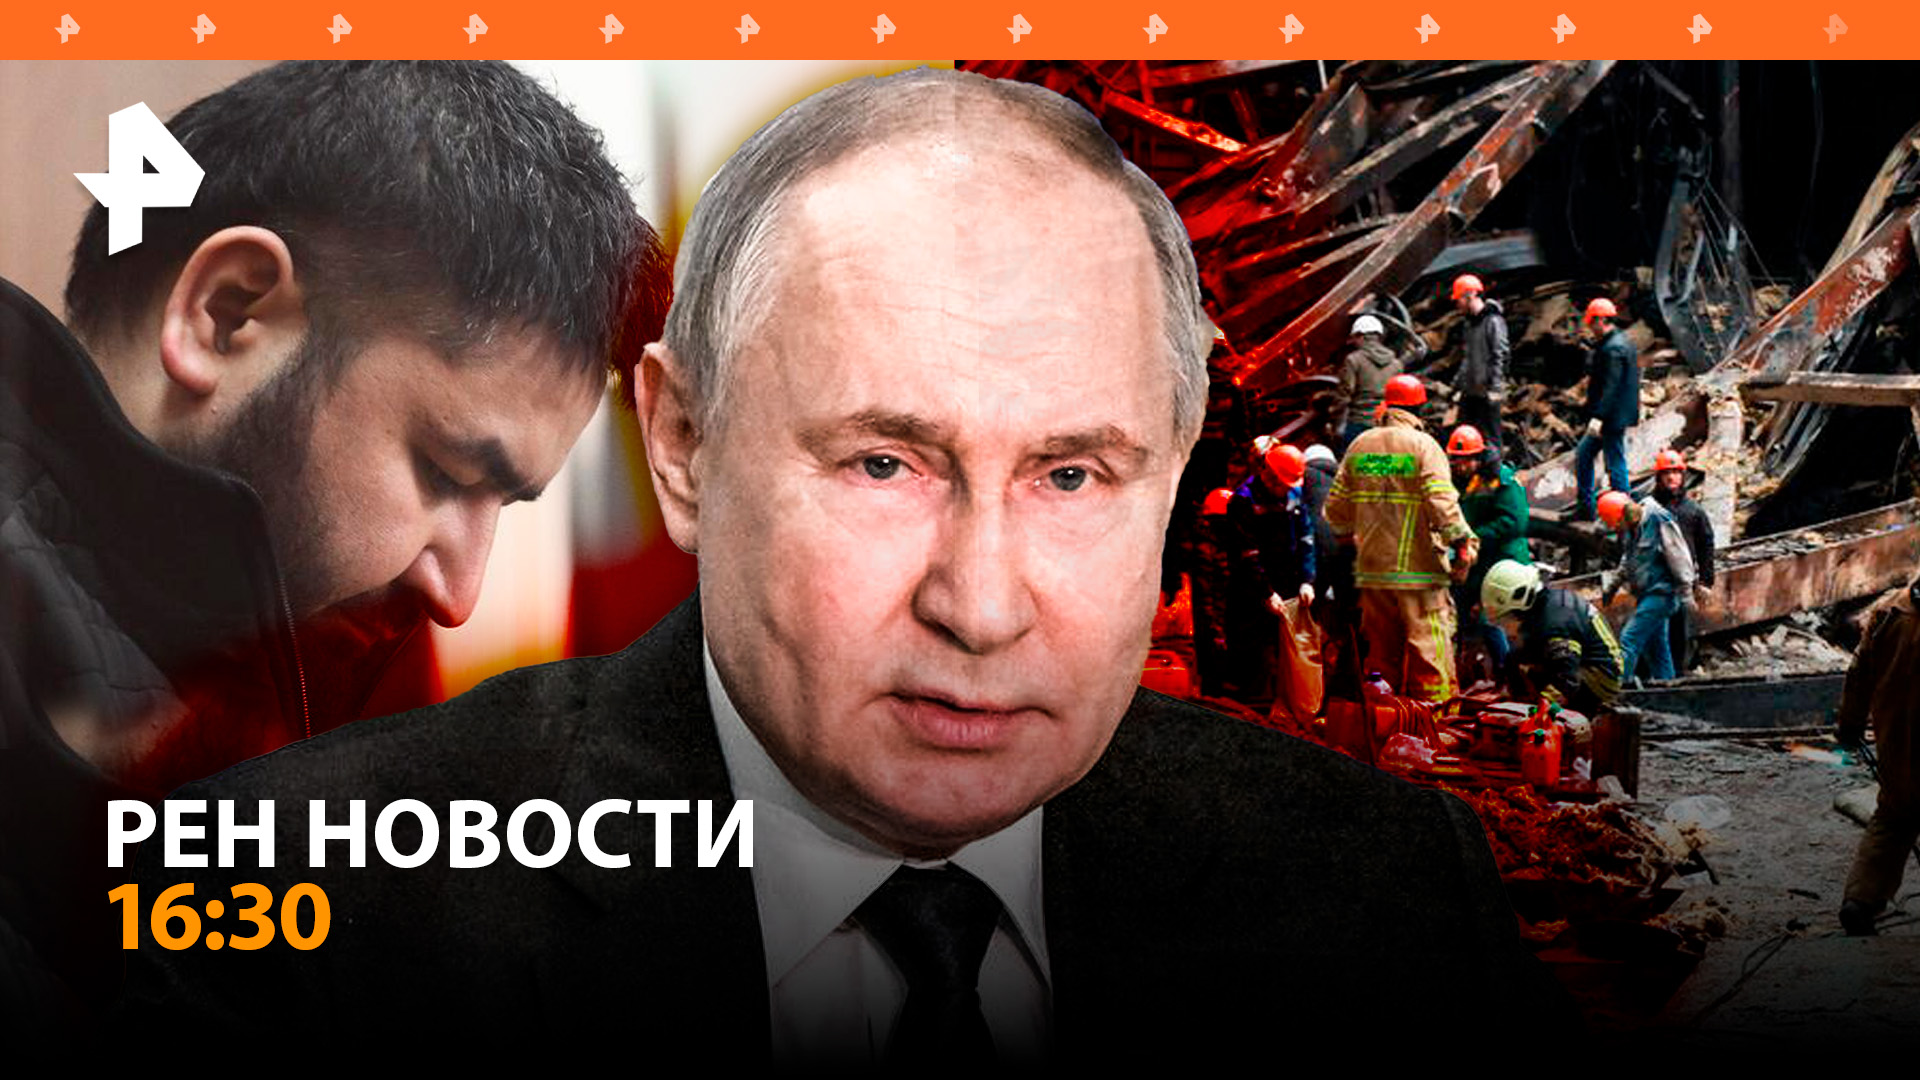 Куда ведет след террористов из "Крокуса" / Киев подставил Европу с газом / РЕН Новости 26.03, 16:30